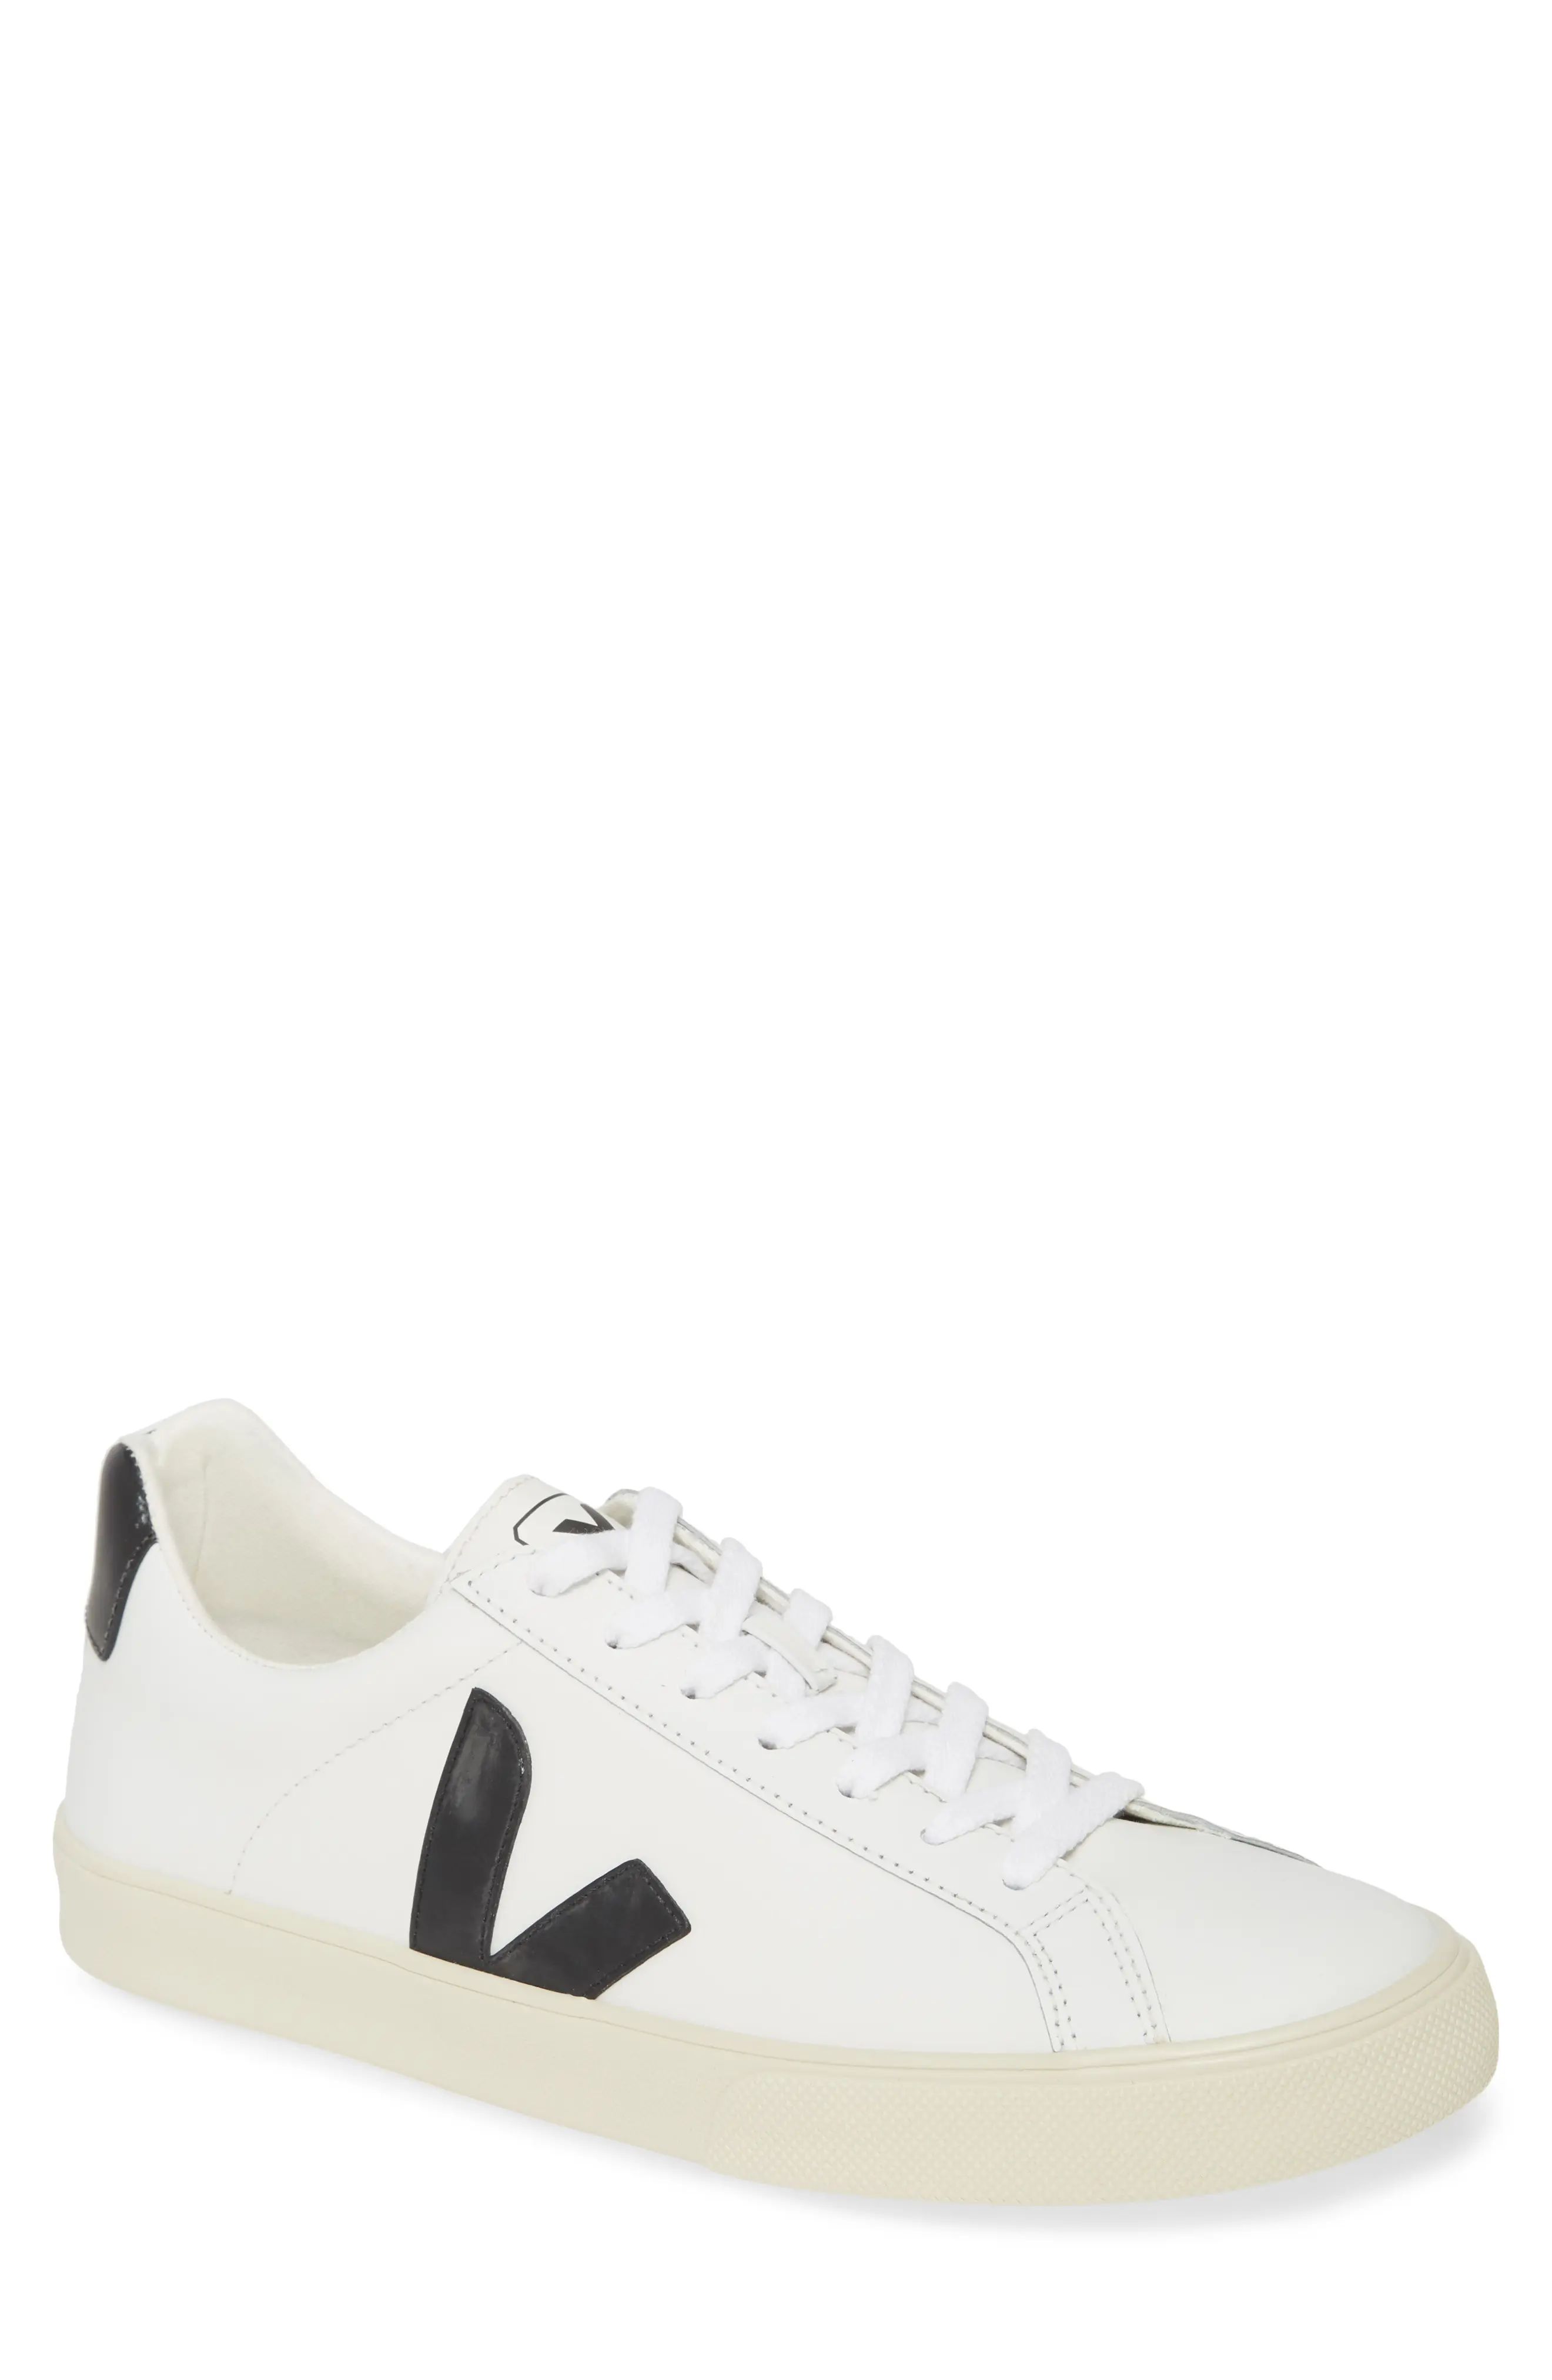 Veja Esplar Sneaker, Size 42EU - White | Nordstrom